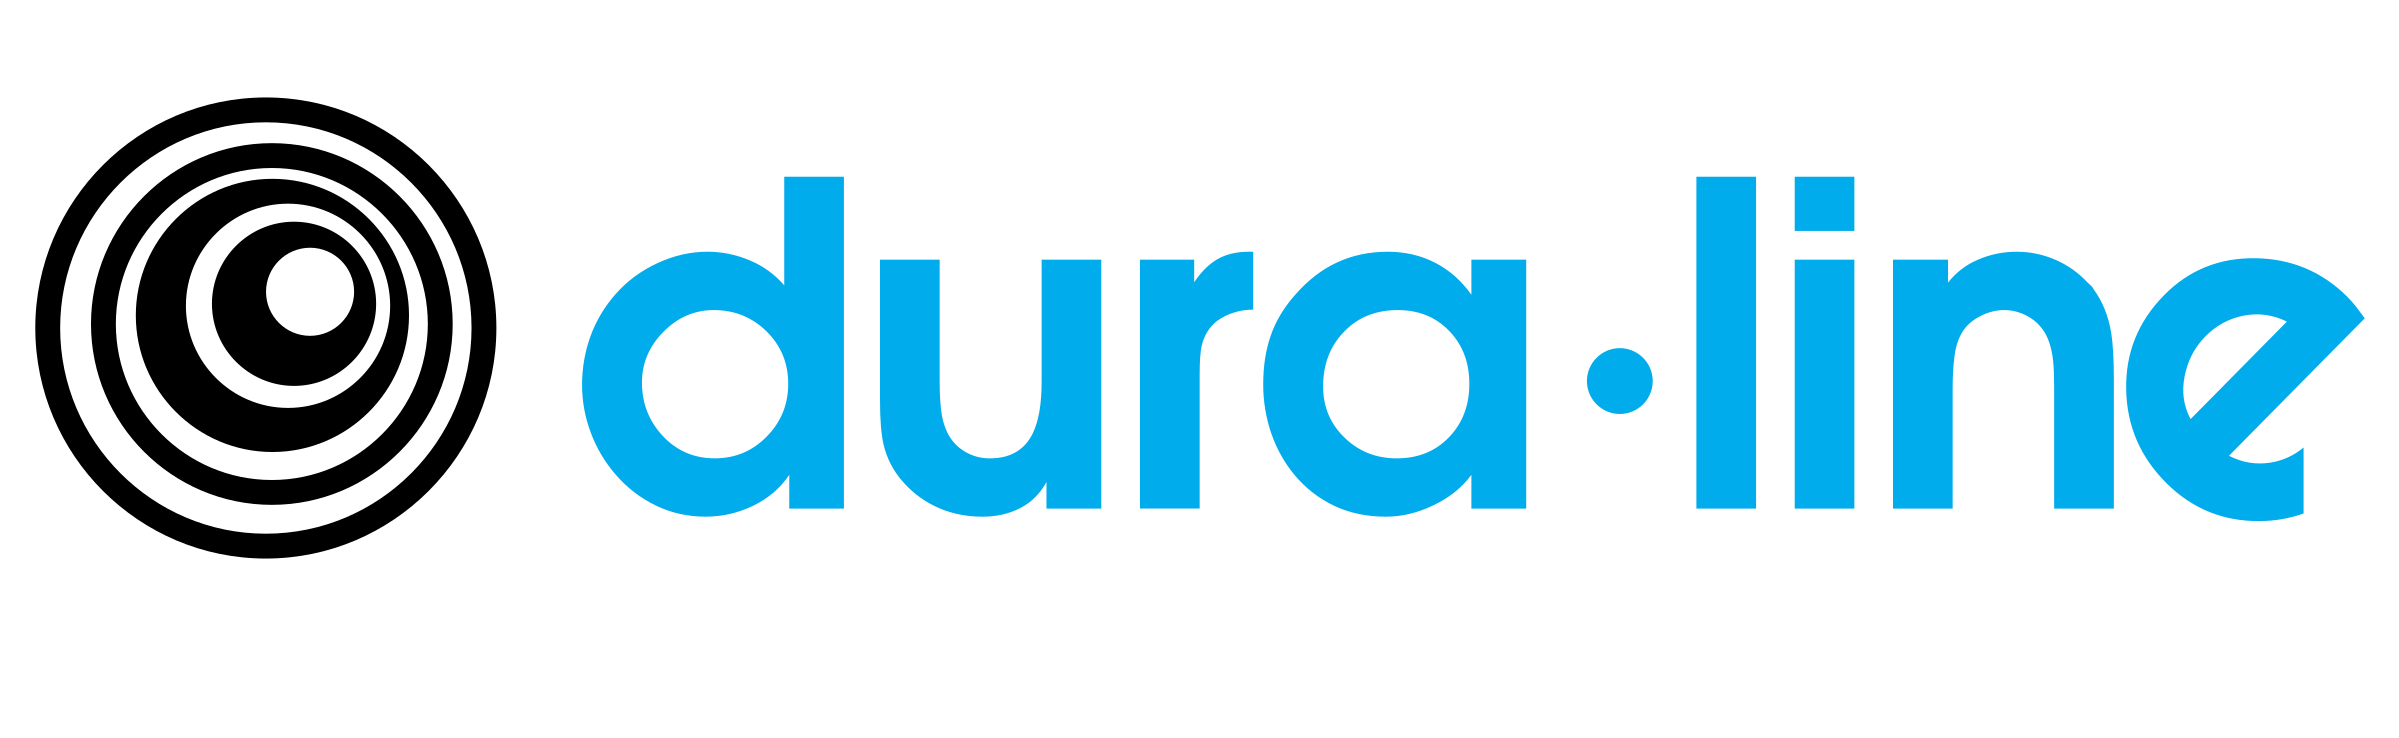 Dura-line-log-1 copy